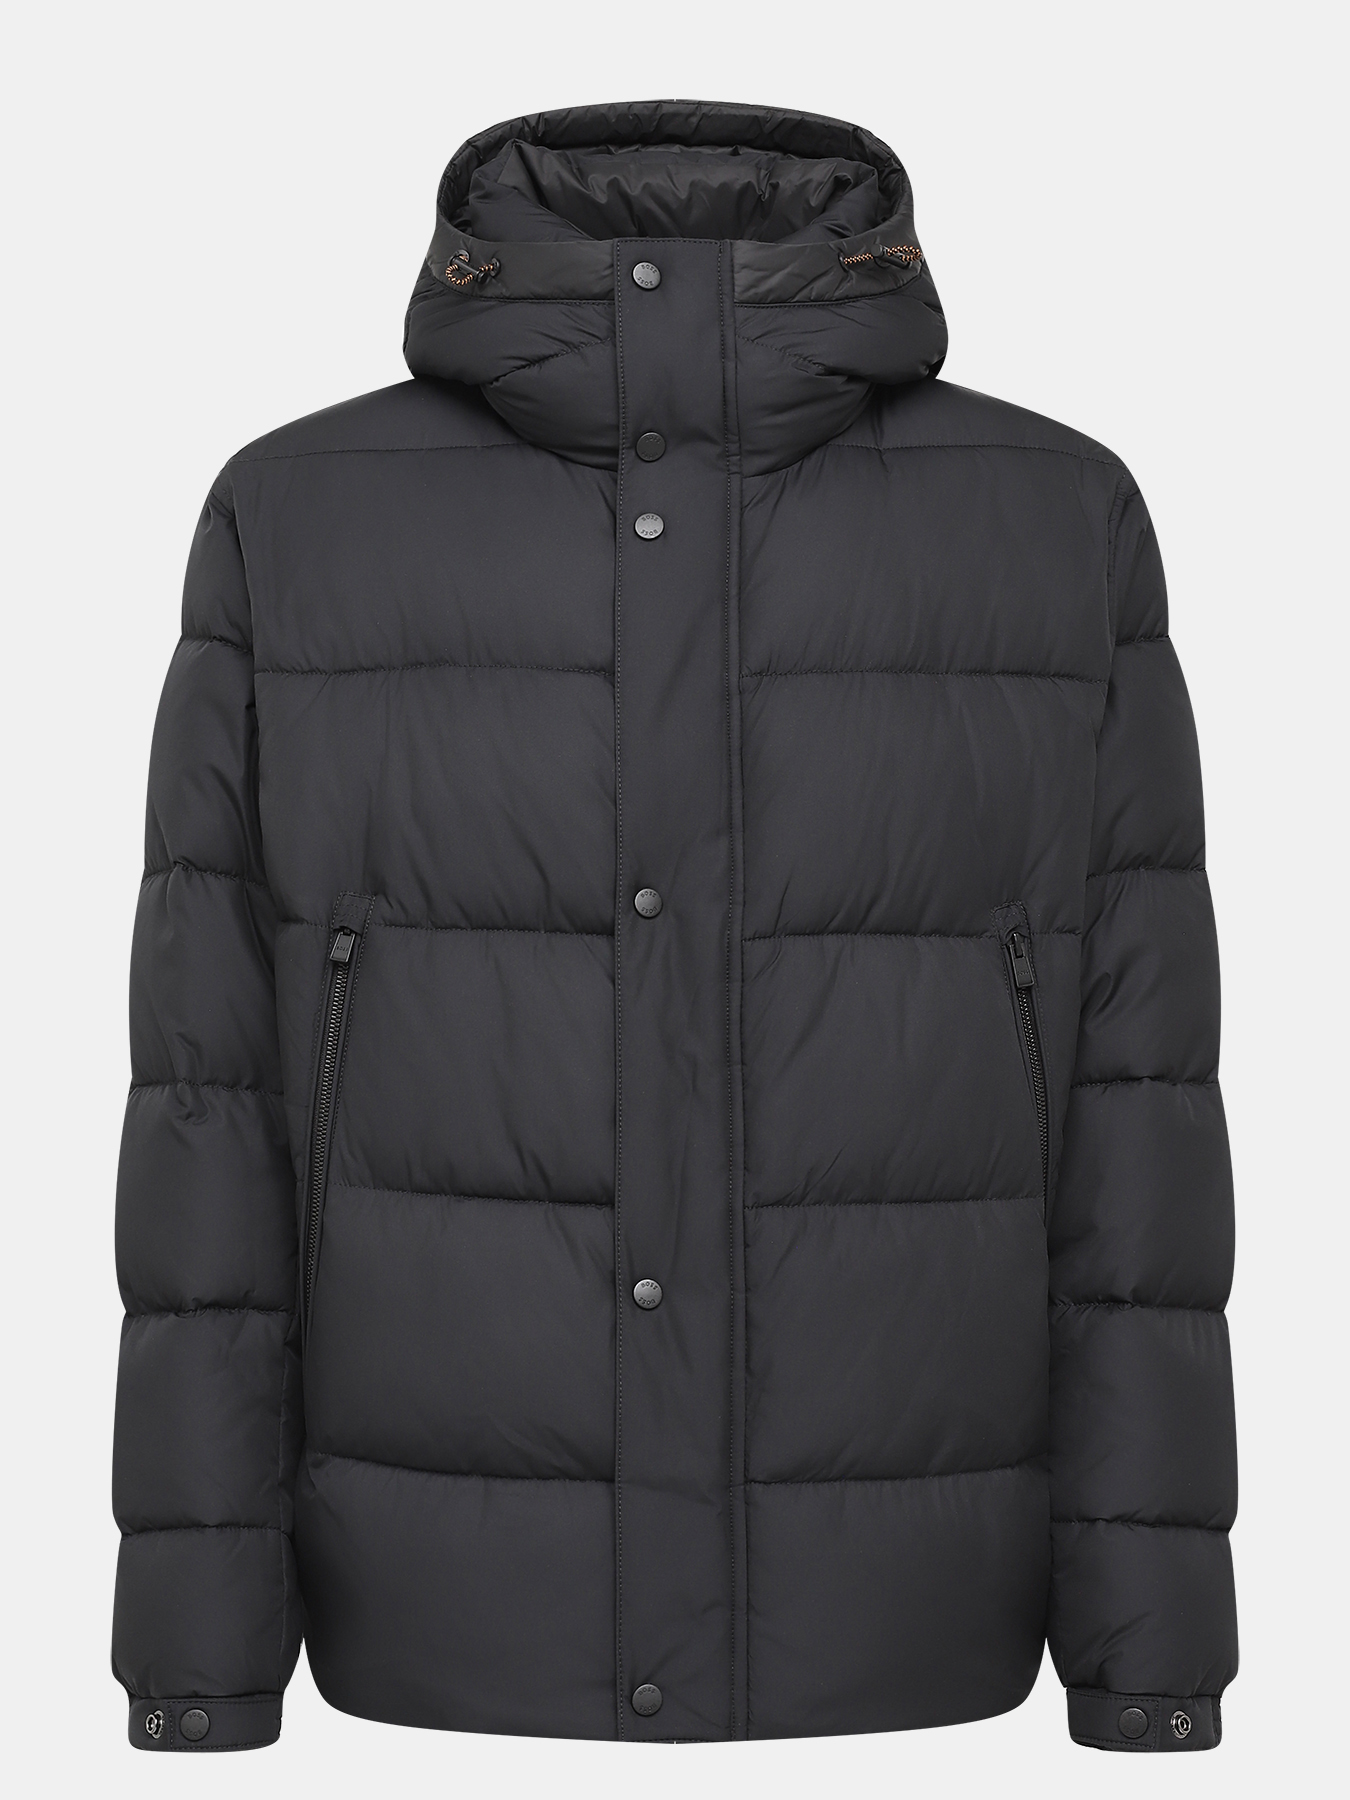 Куртка Omaris BOSS 426042-029, цвет черный, размер 56